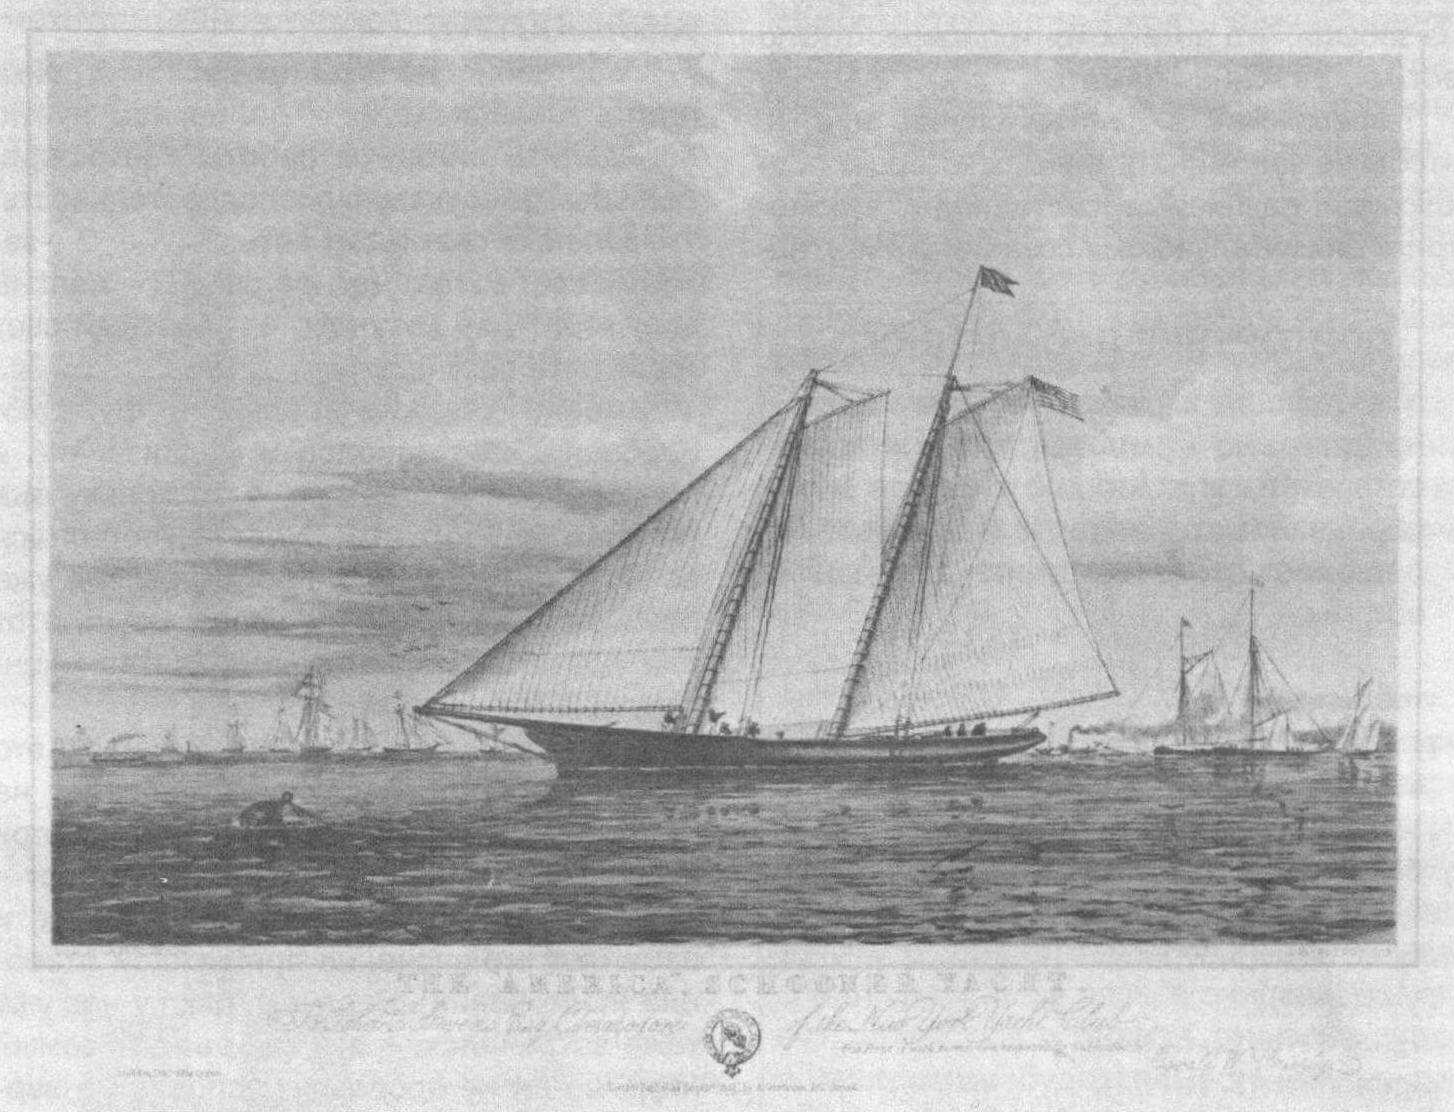 Литография, запечатлевшая яхту-шхуну «Америка» в качестве судна, принадлежавшего Нью-Йоркскому яхт-клубу